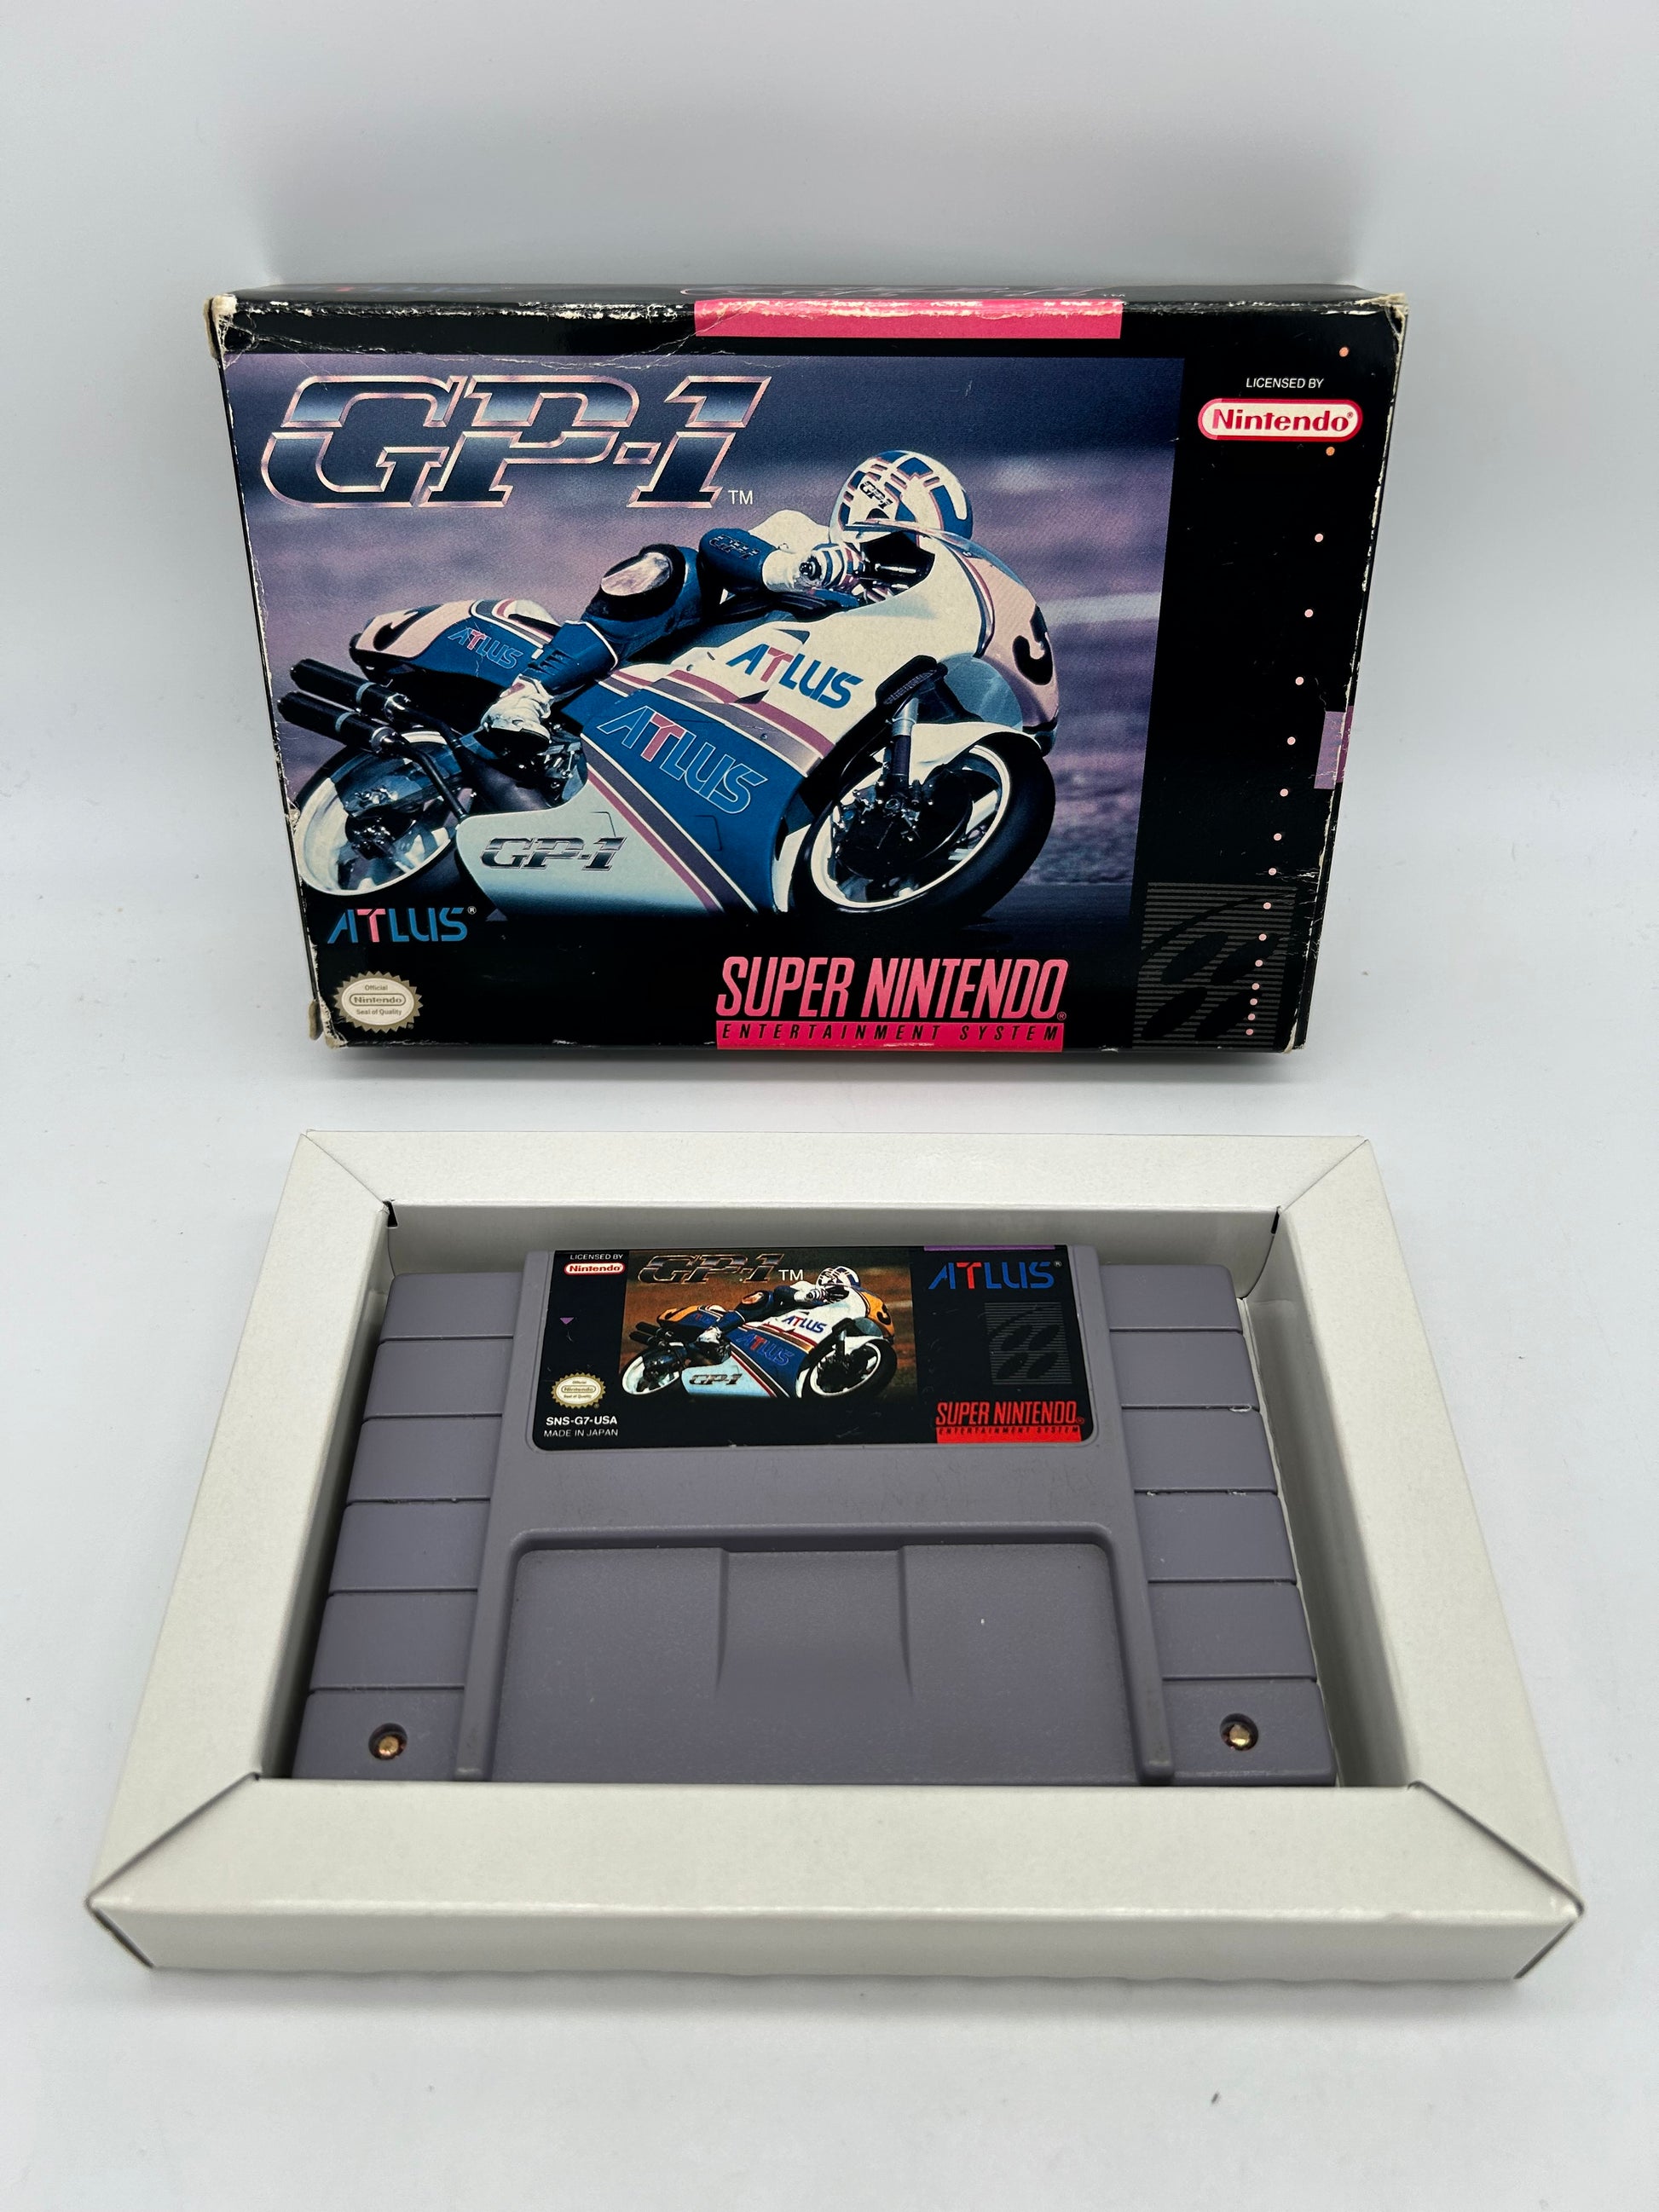 PiXEL-RETRO.COM : SUPER NINTENDO NES (SNES) COMPLET CIB BOX GAME NTSC GP1 GP-1